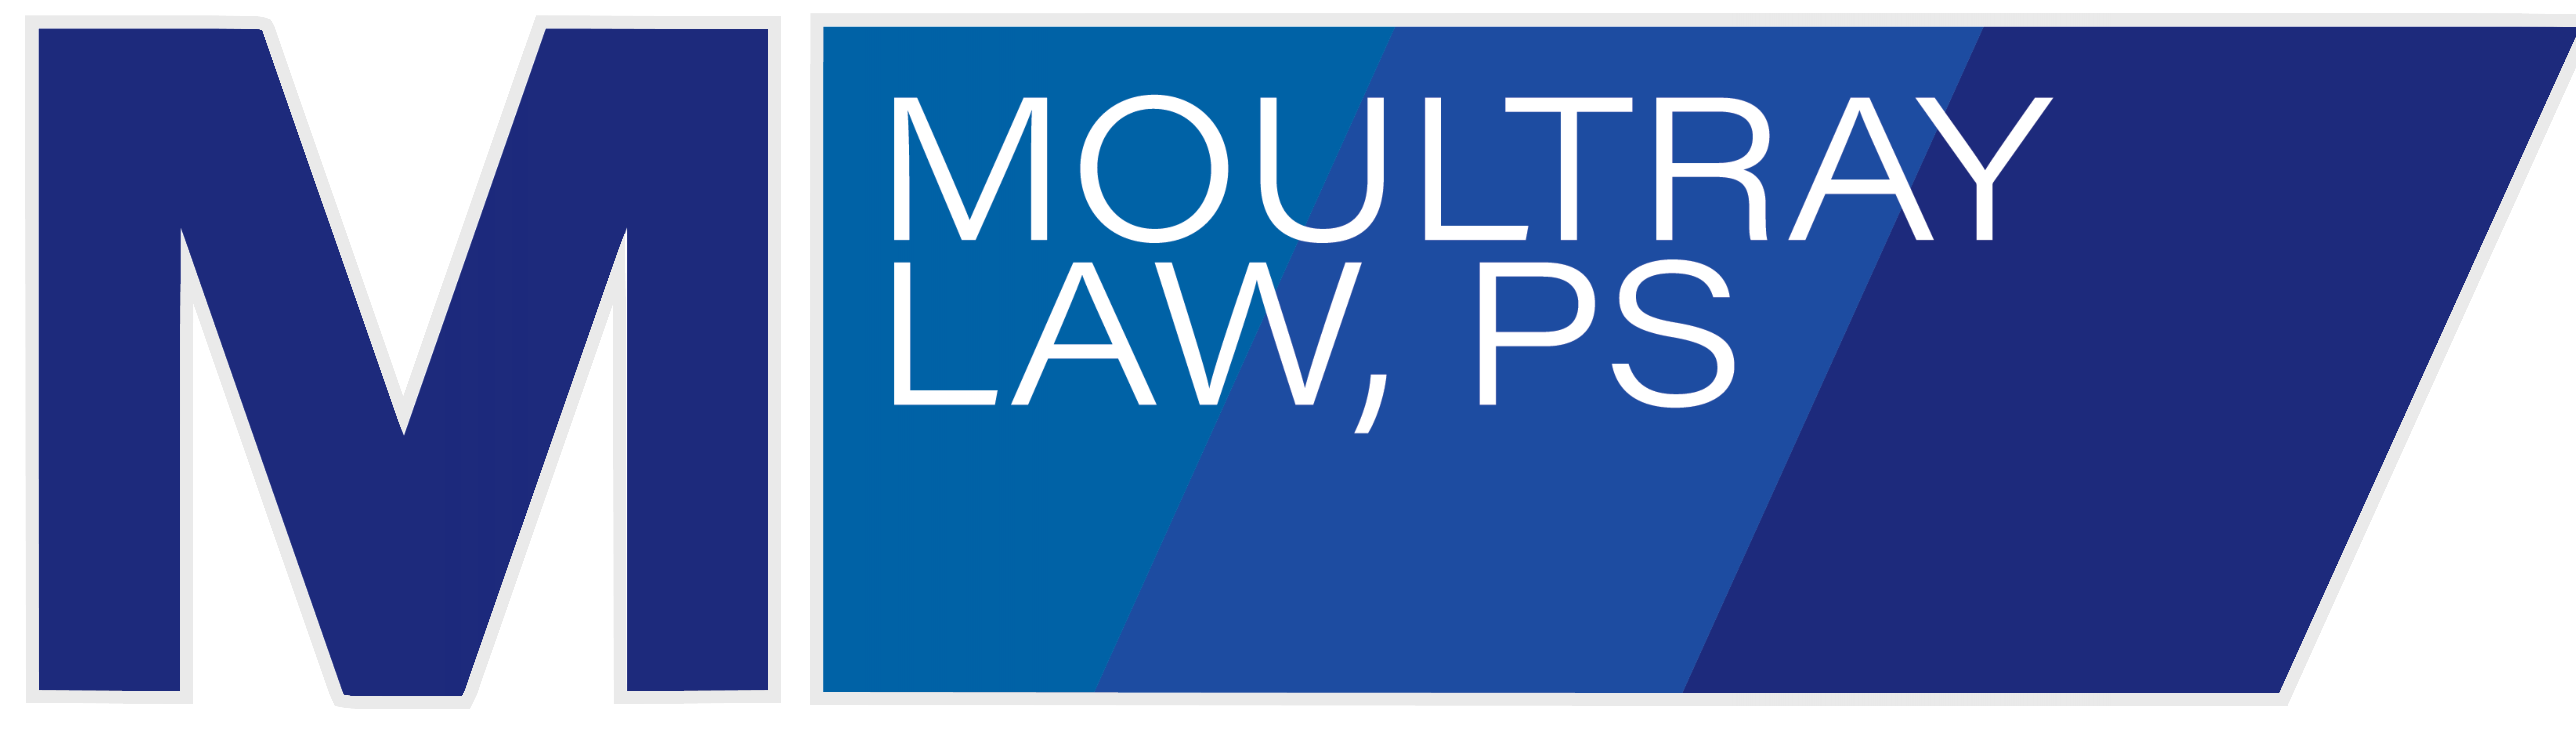 Moultray Law